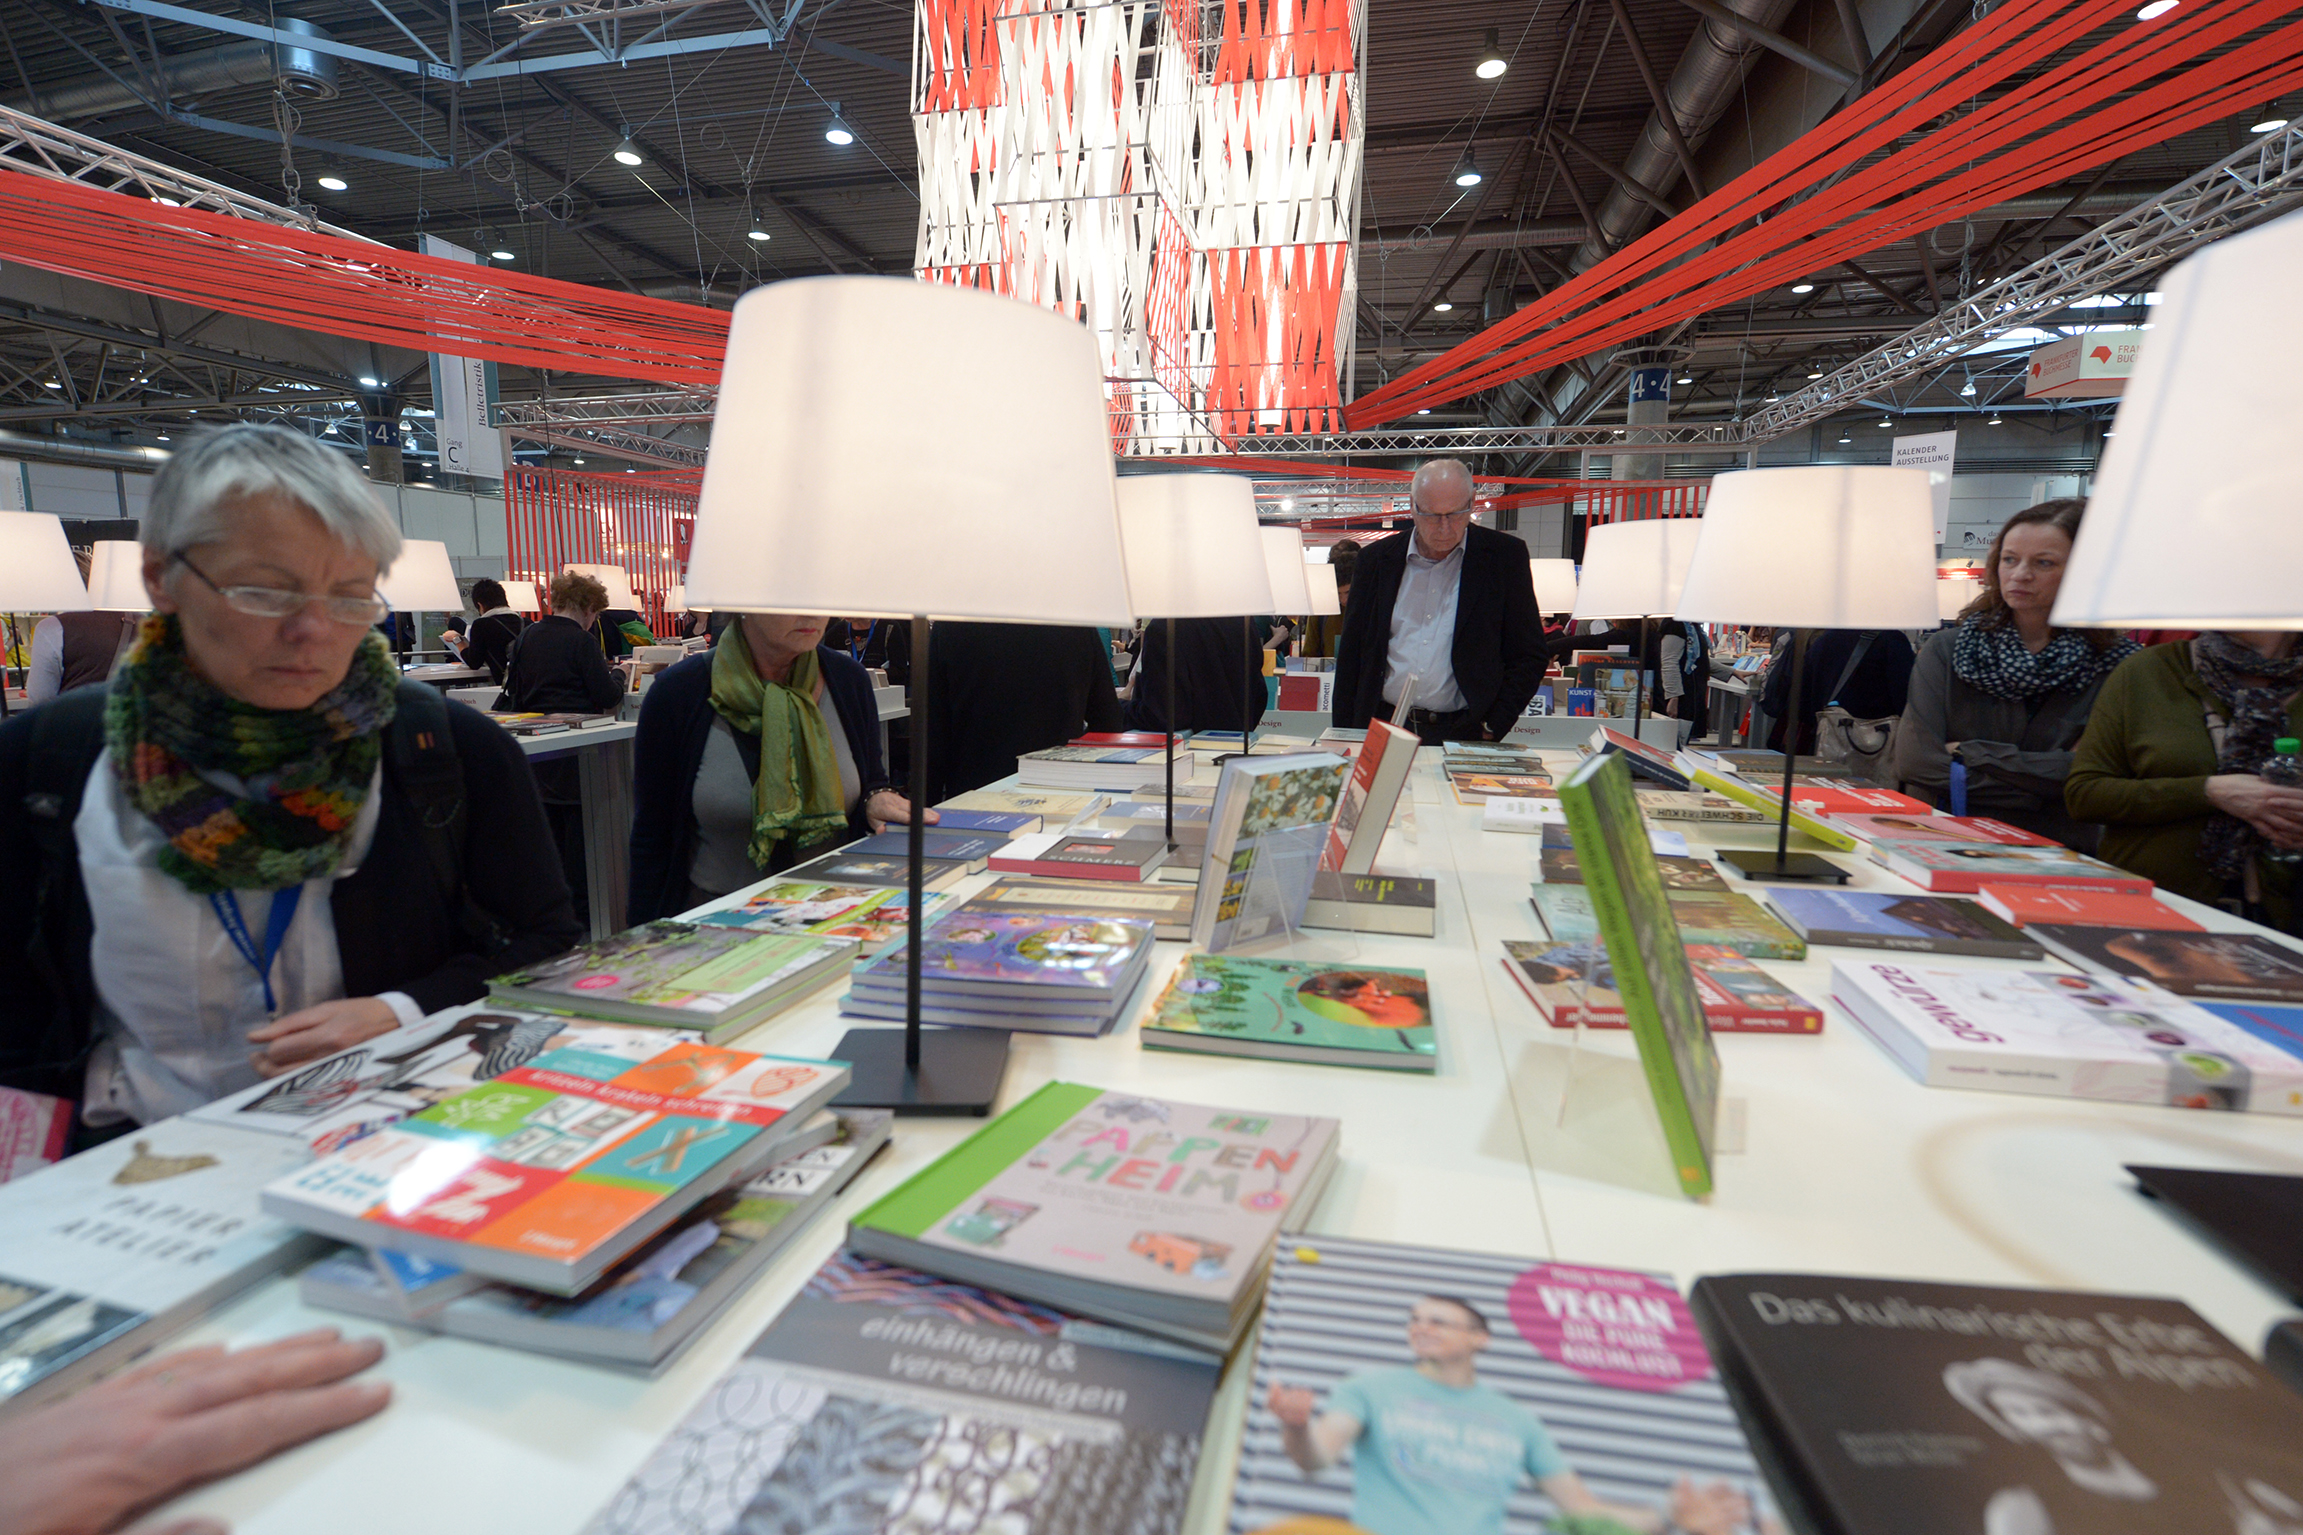   Ruck, zuck, weg | Ein Phänomen auf der Leipziger Buchmesse: Das Bücherklauen  